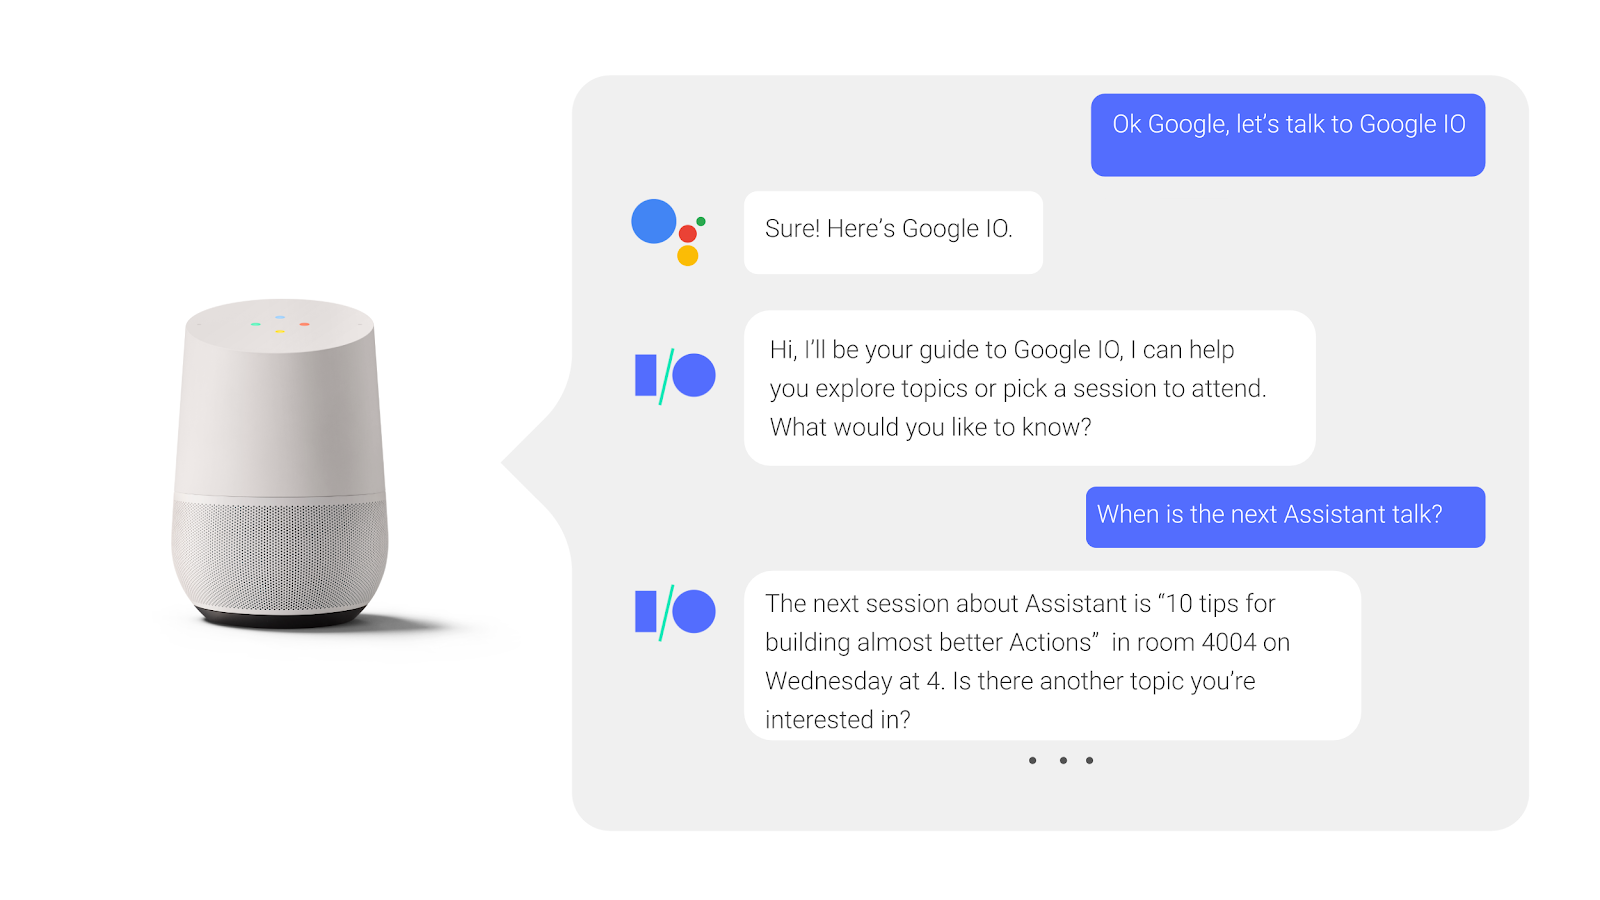 Trong cuộc trò chuyện qua lại với Trợ lý Google, người dùng đặt câu hỏi và nhận được câu trả lời khi một phiên hội nghị truyền hình đang diễn ra.